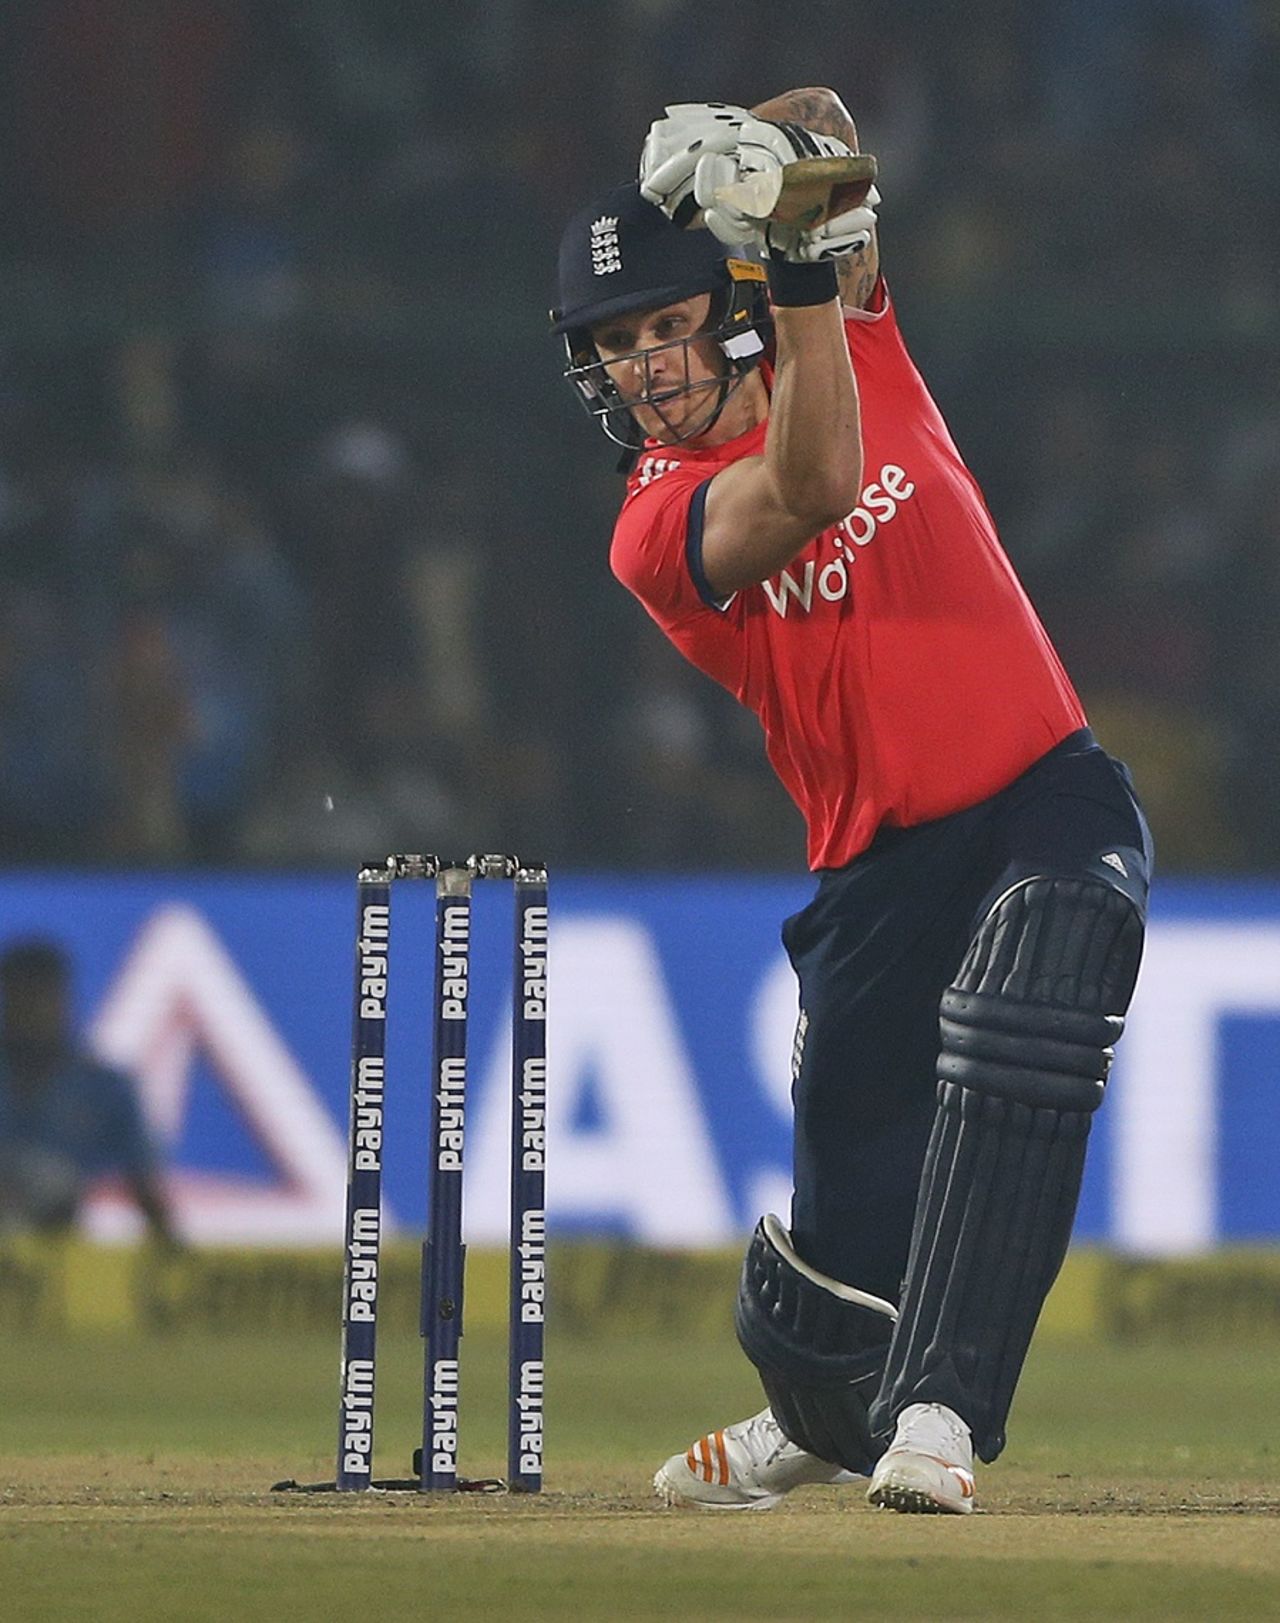 Jason Roy gave England a swift start, India v England, 1st T20I, Kanpur, January 26, 2017